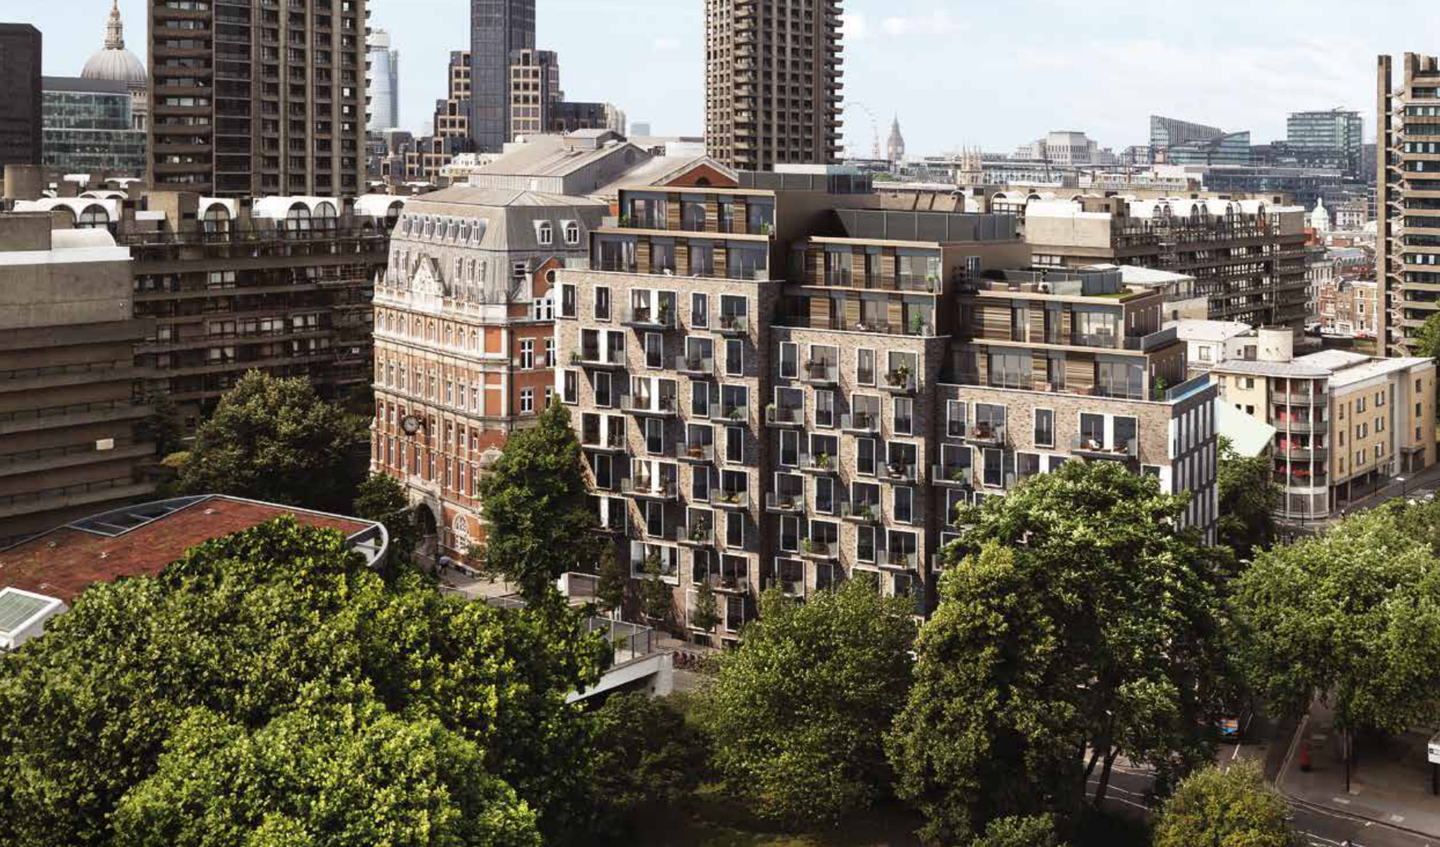 【丹尼森公寓】伦敦"陆家嘴"绝版项目,中产青睐的典藏住宅!78.5w镑起